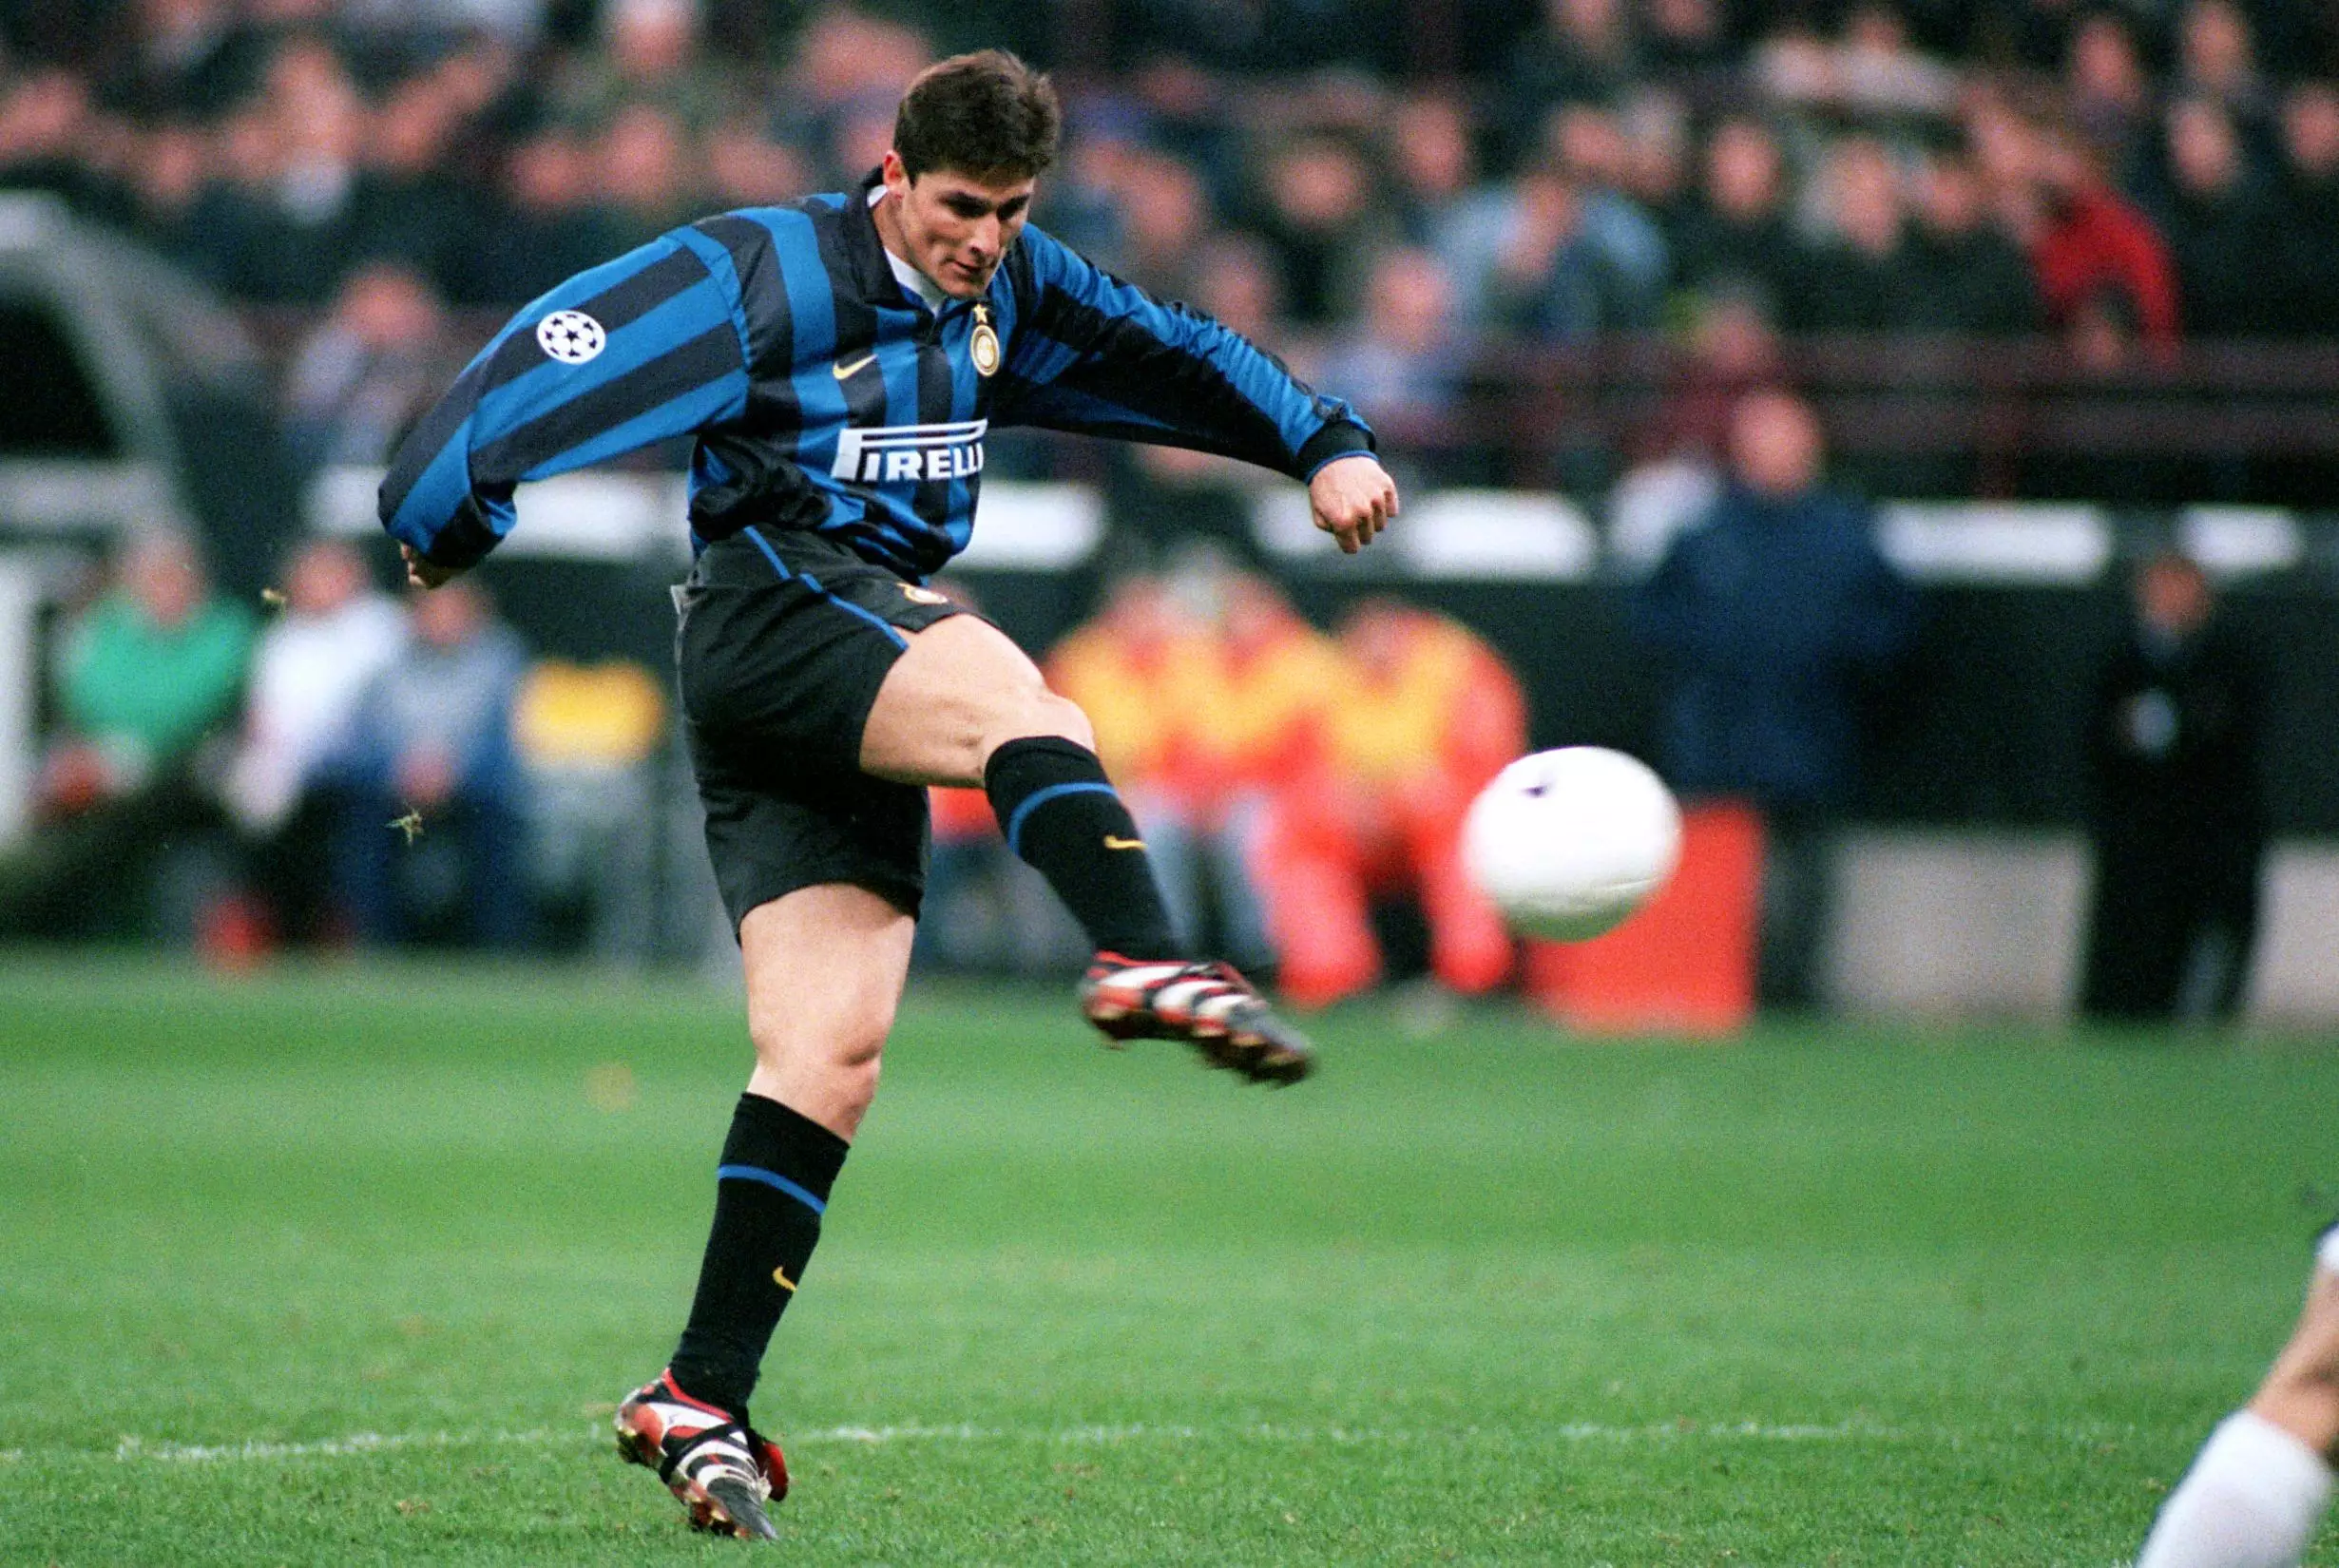 Inter icon Javier Zanetti wore many Pirelli kits. Image: PA Images